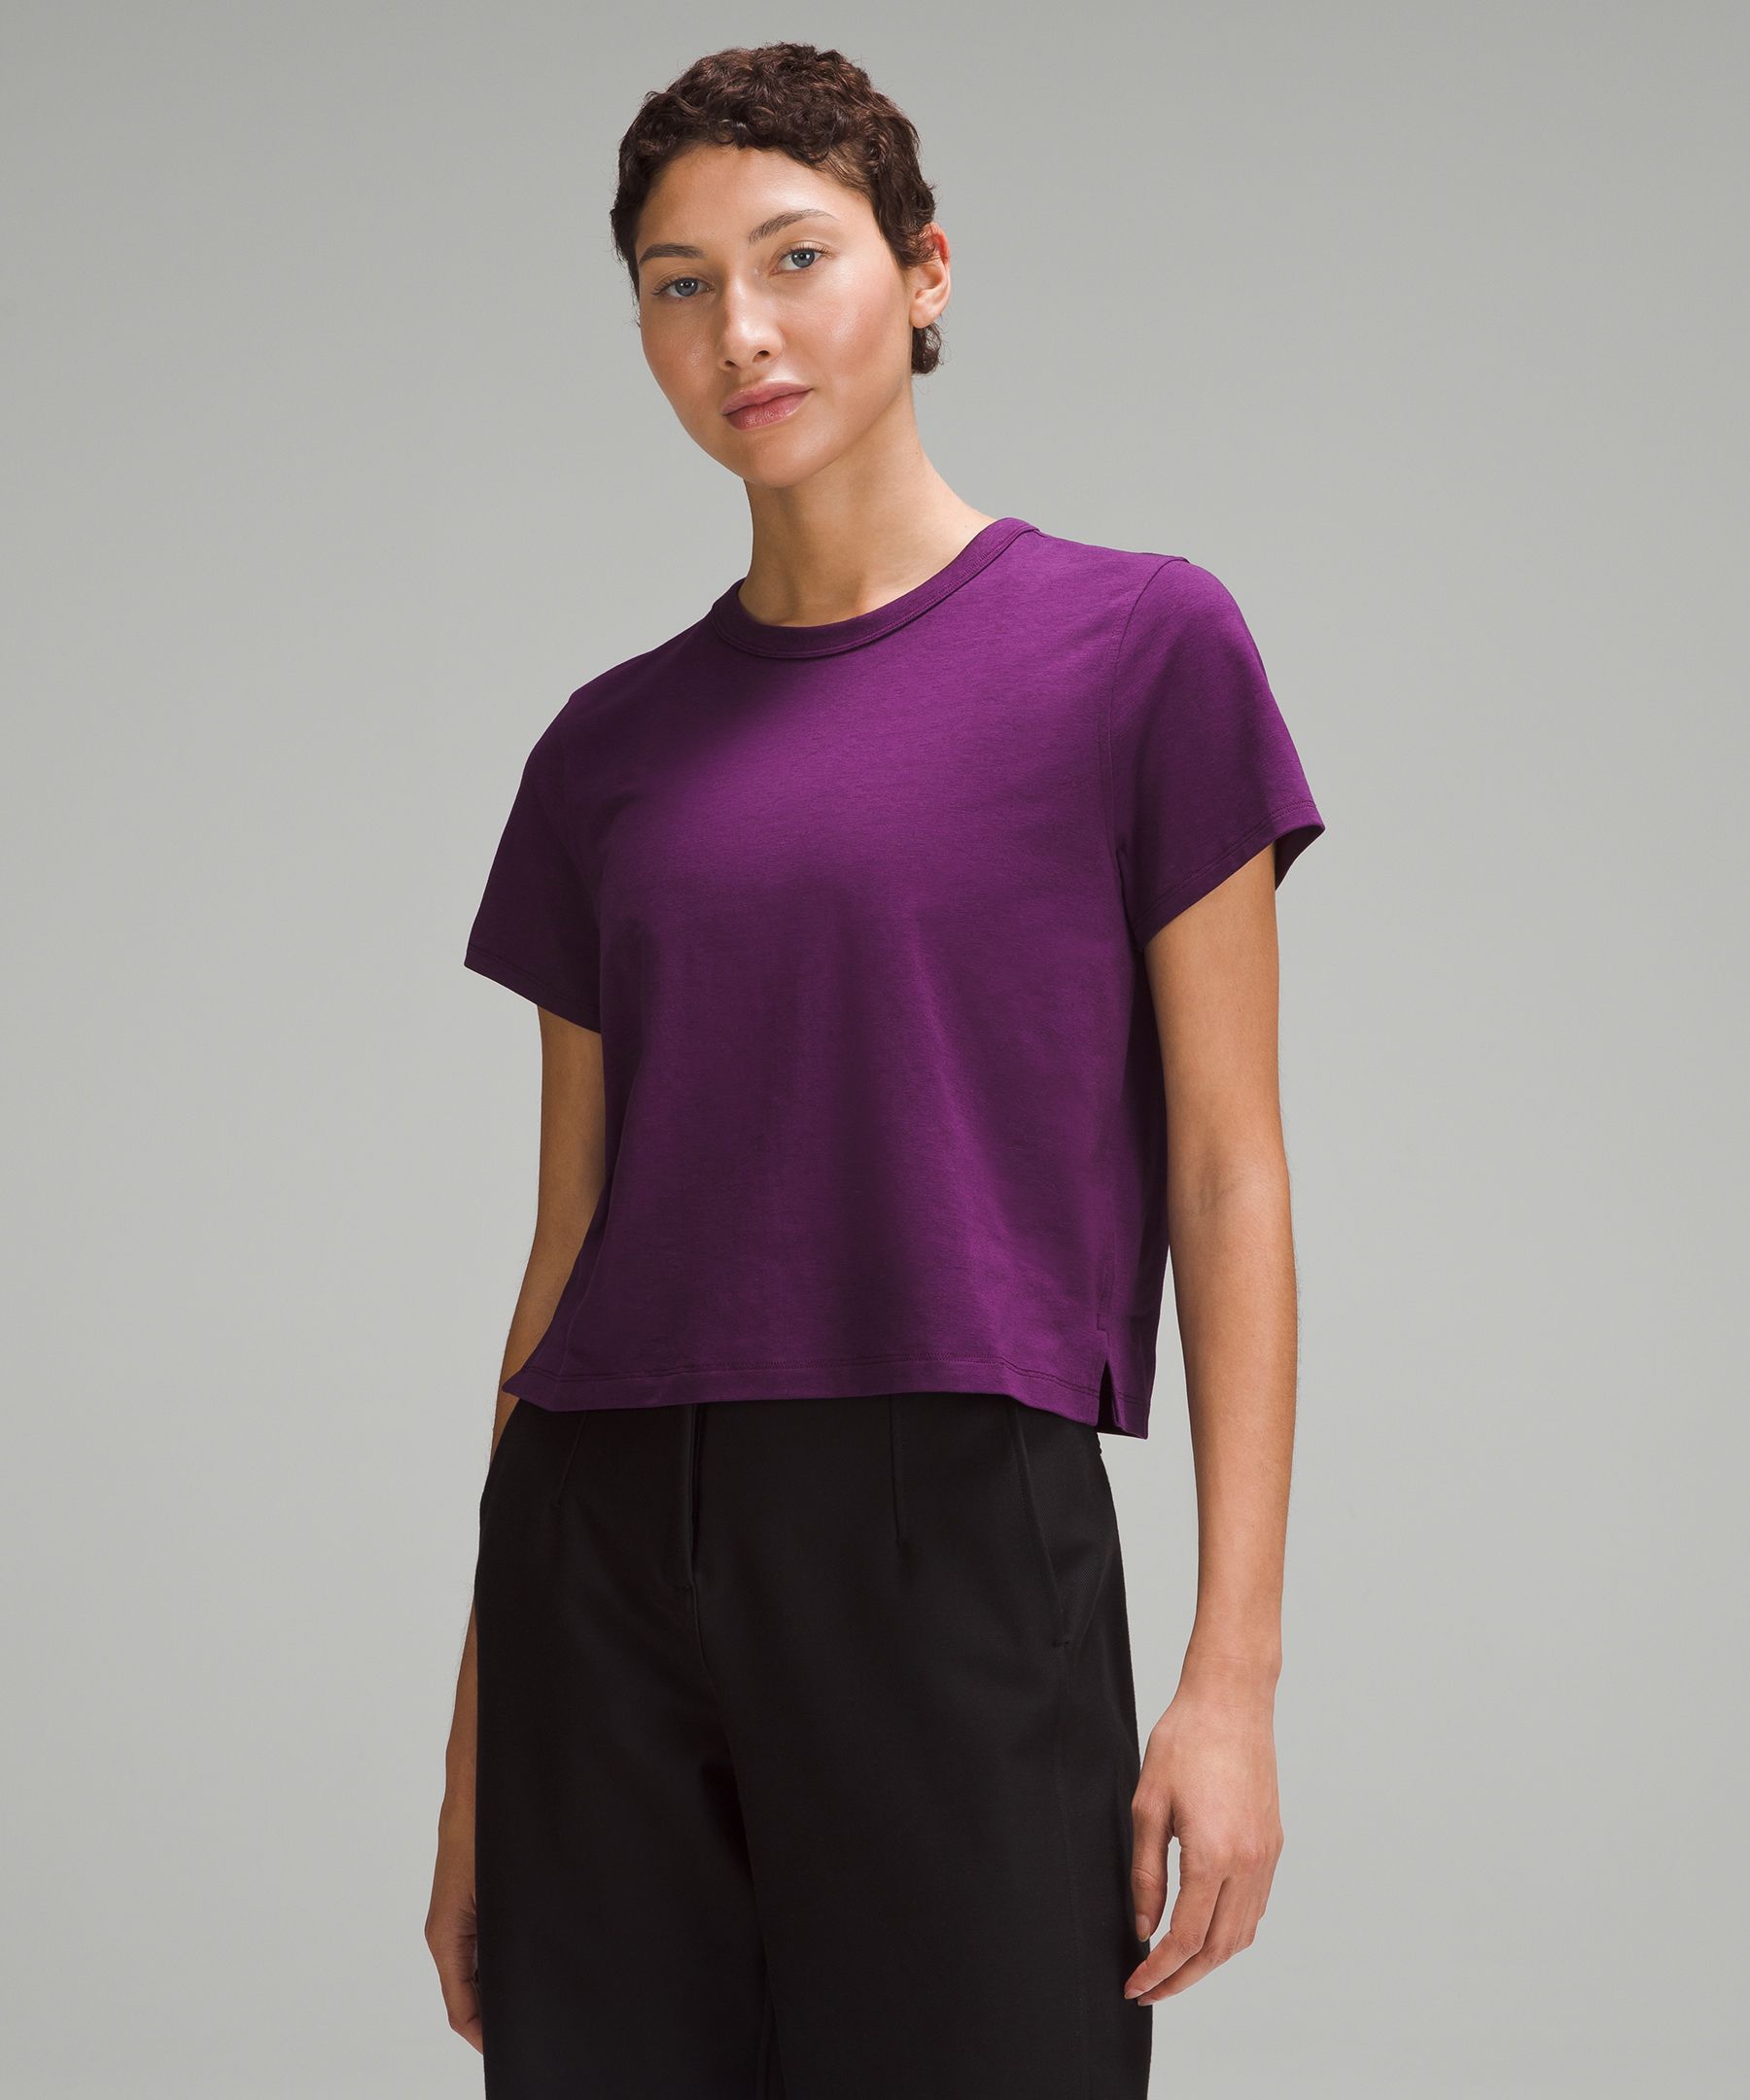 Women's Short-Sleeved Dance T-Shirt - Purple